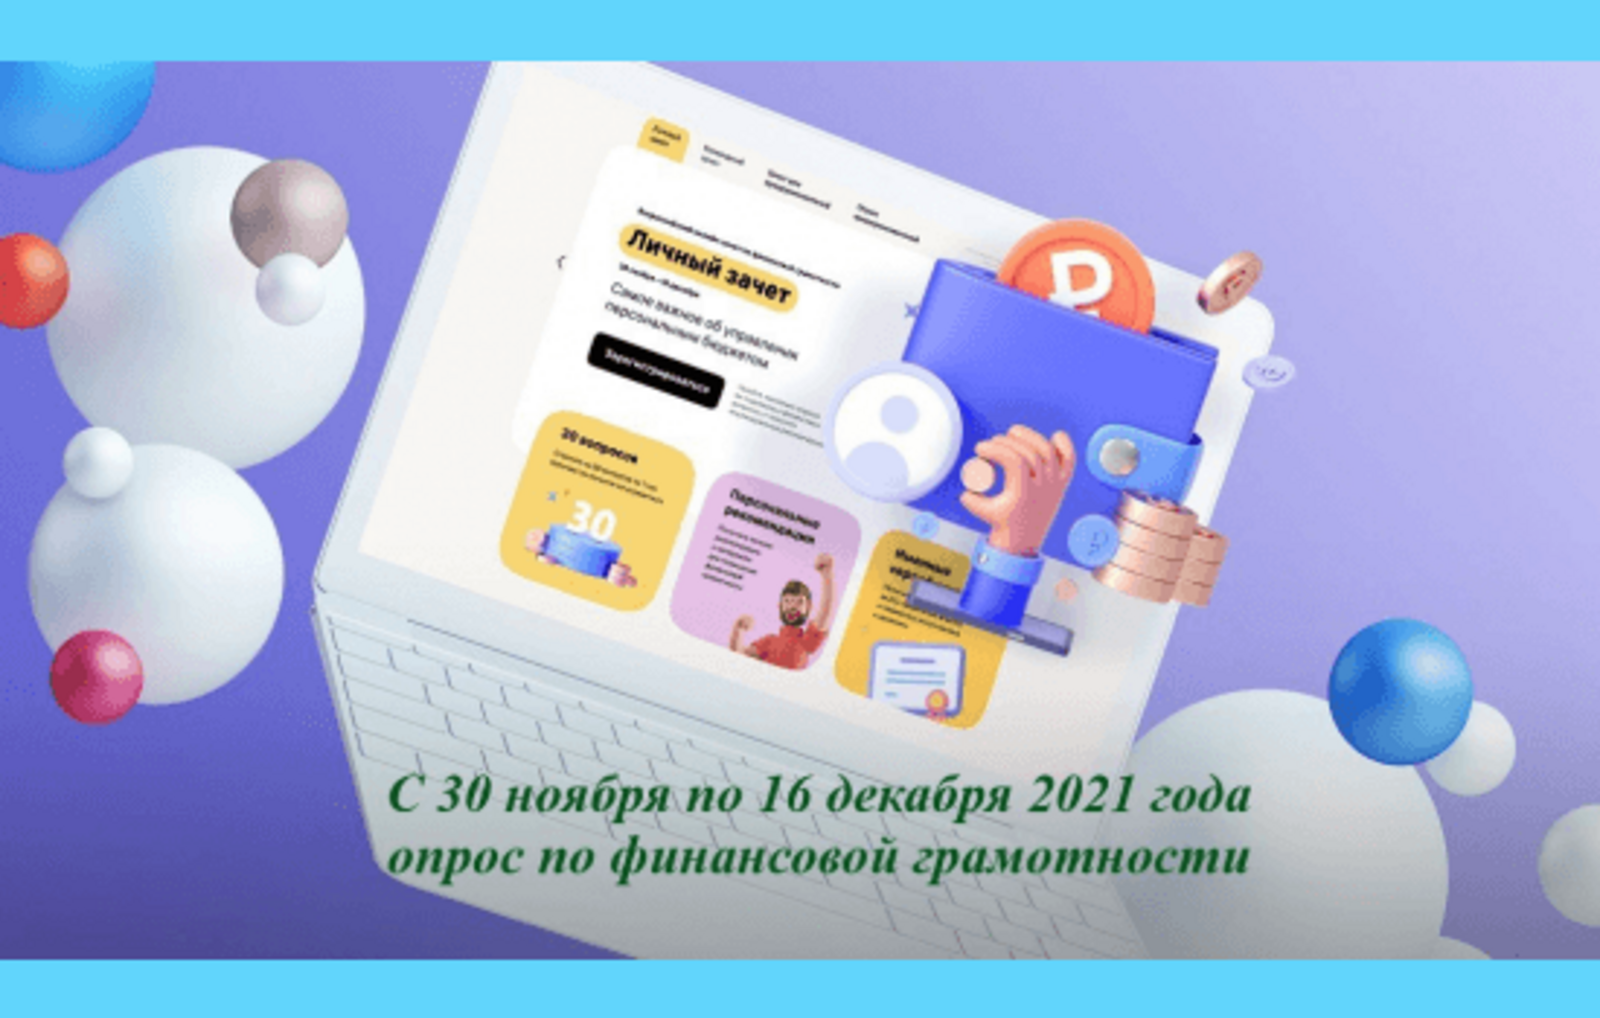 Жители Башкортостана могут сдать онлайн-зачет по финансовой грамотности и получить именной сертификат